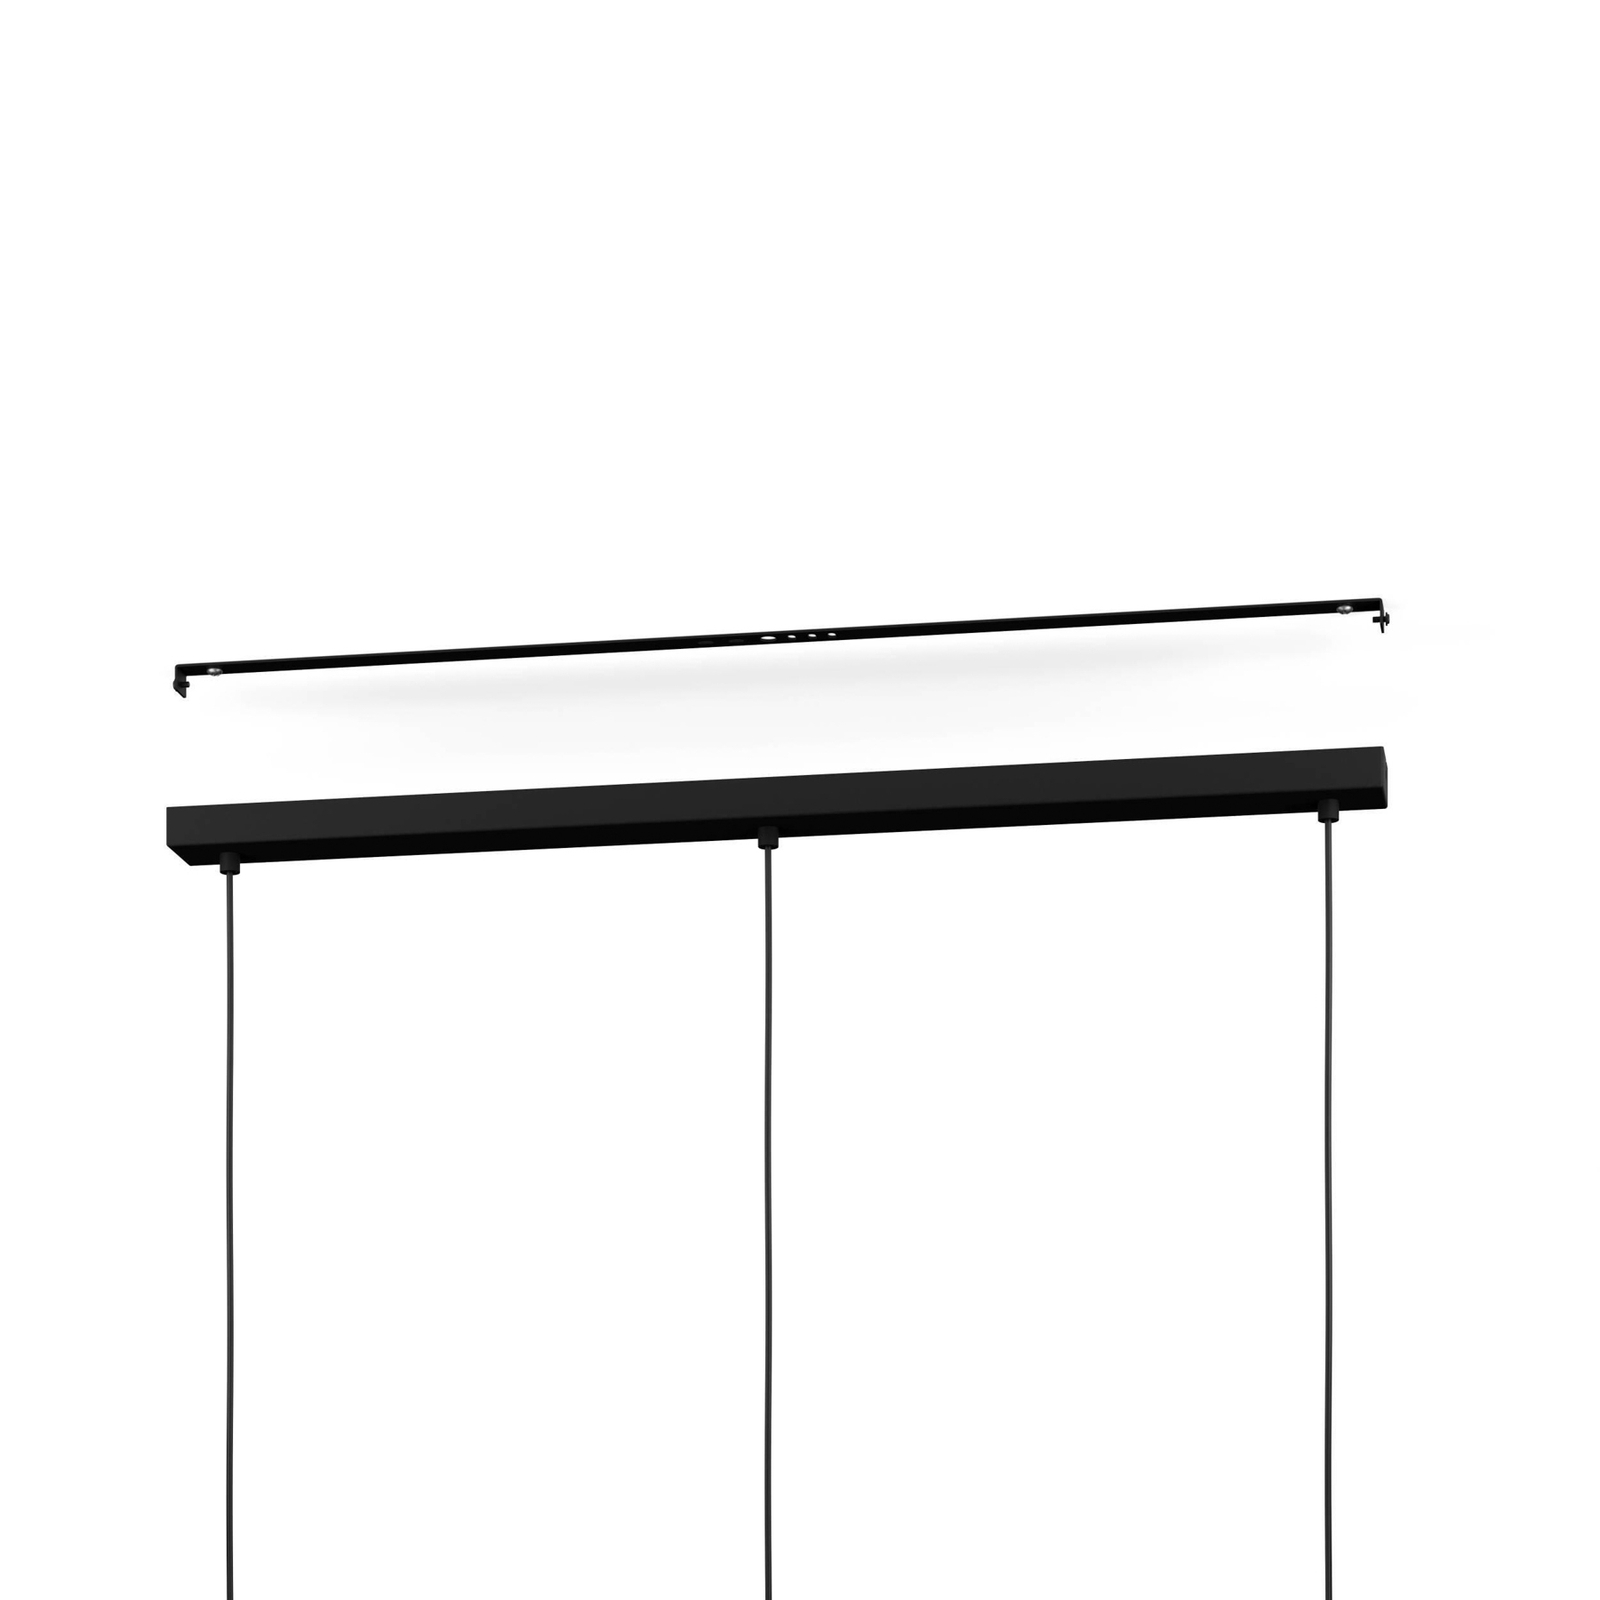 Matlock hængelampe, længde 90 cm, grå/sort, 3 lyskilder.